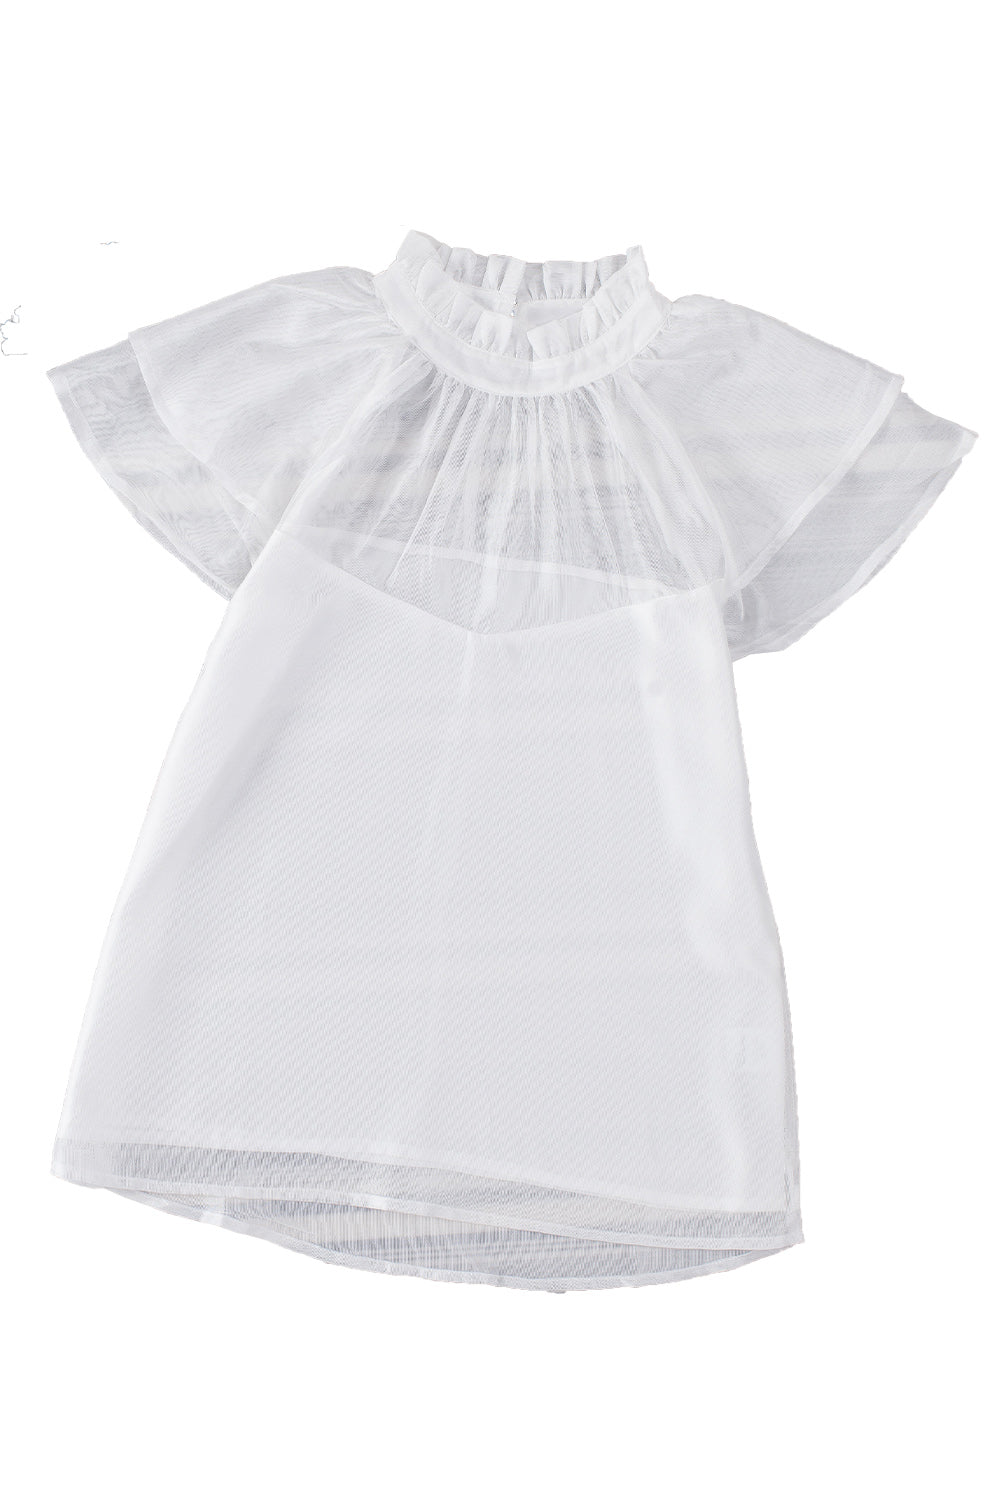 Weiße, transparente Bluse mit gespleißtem Stehkragen und Rüschenärmeln